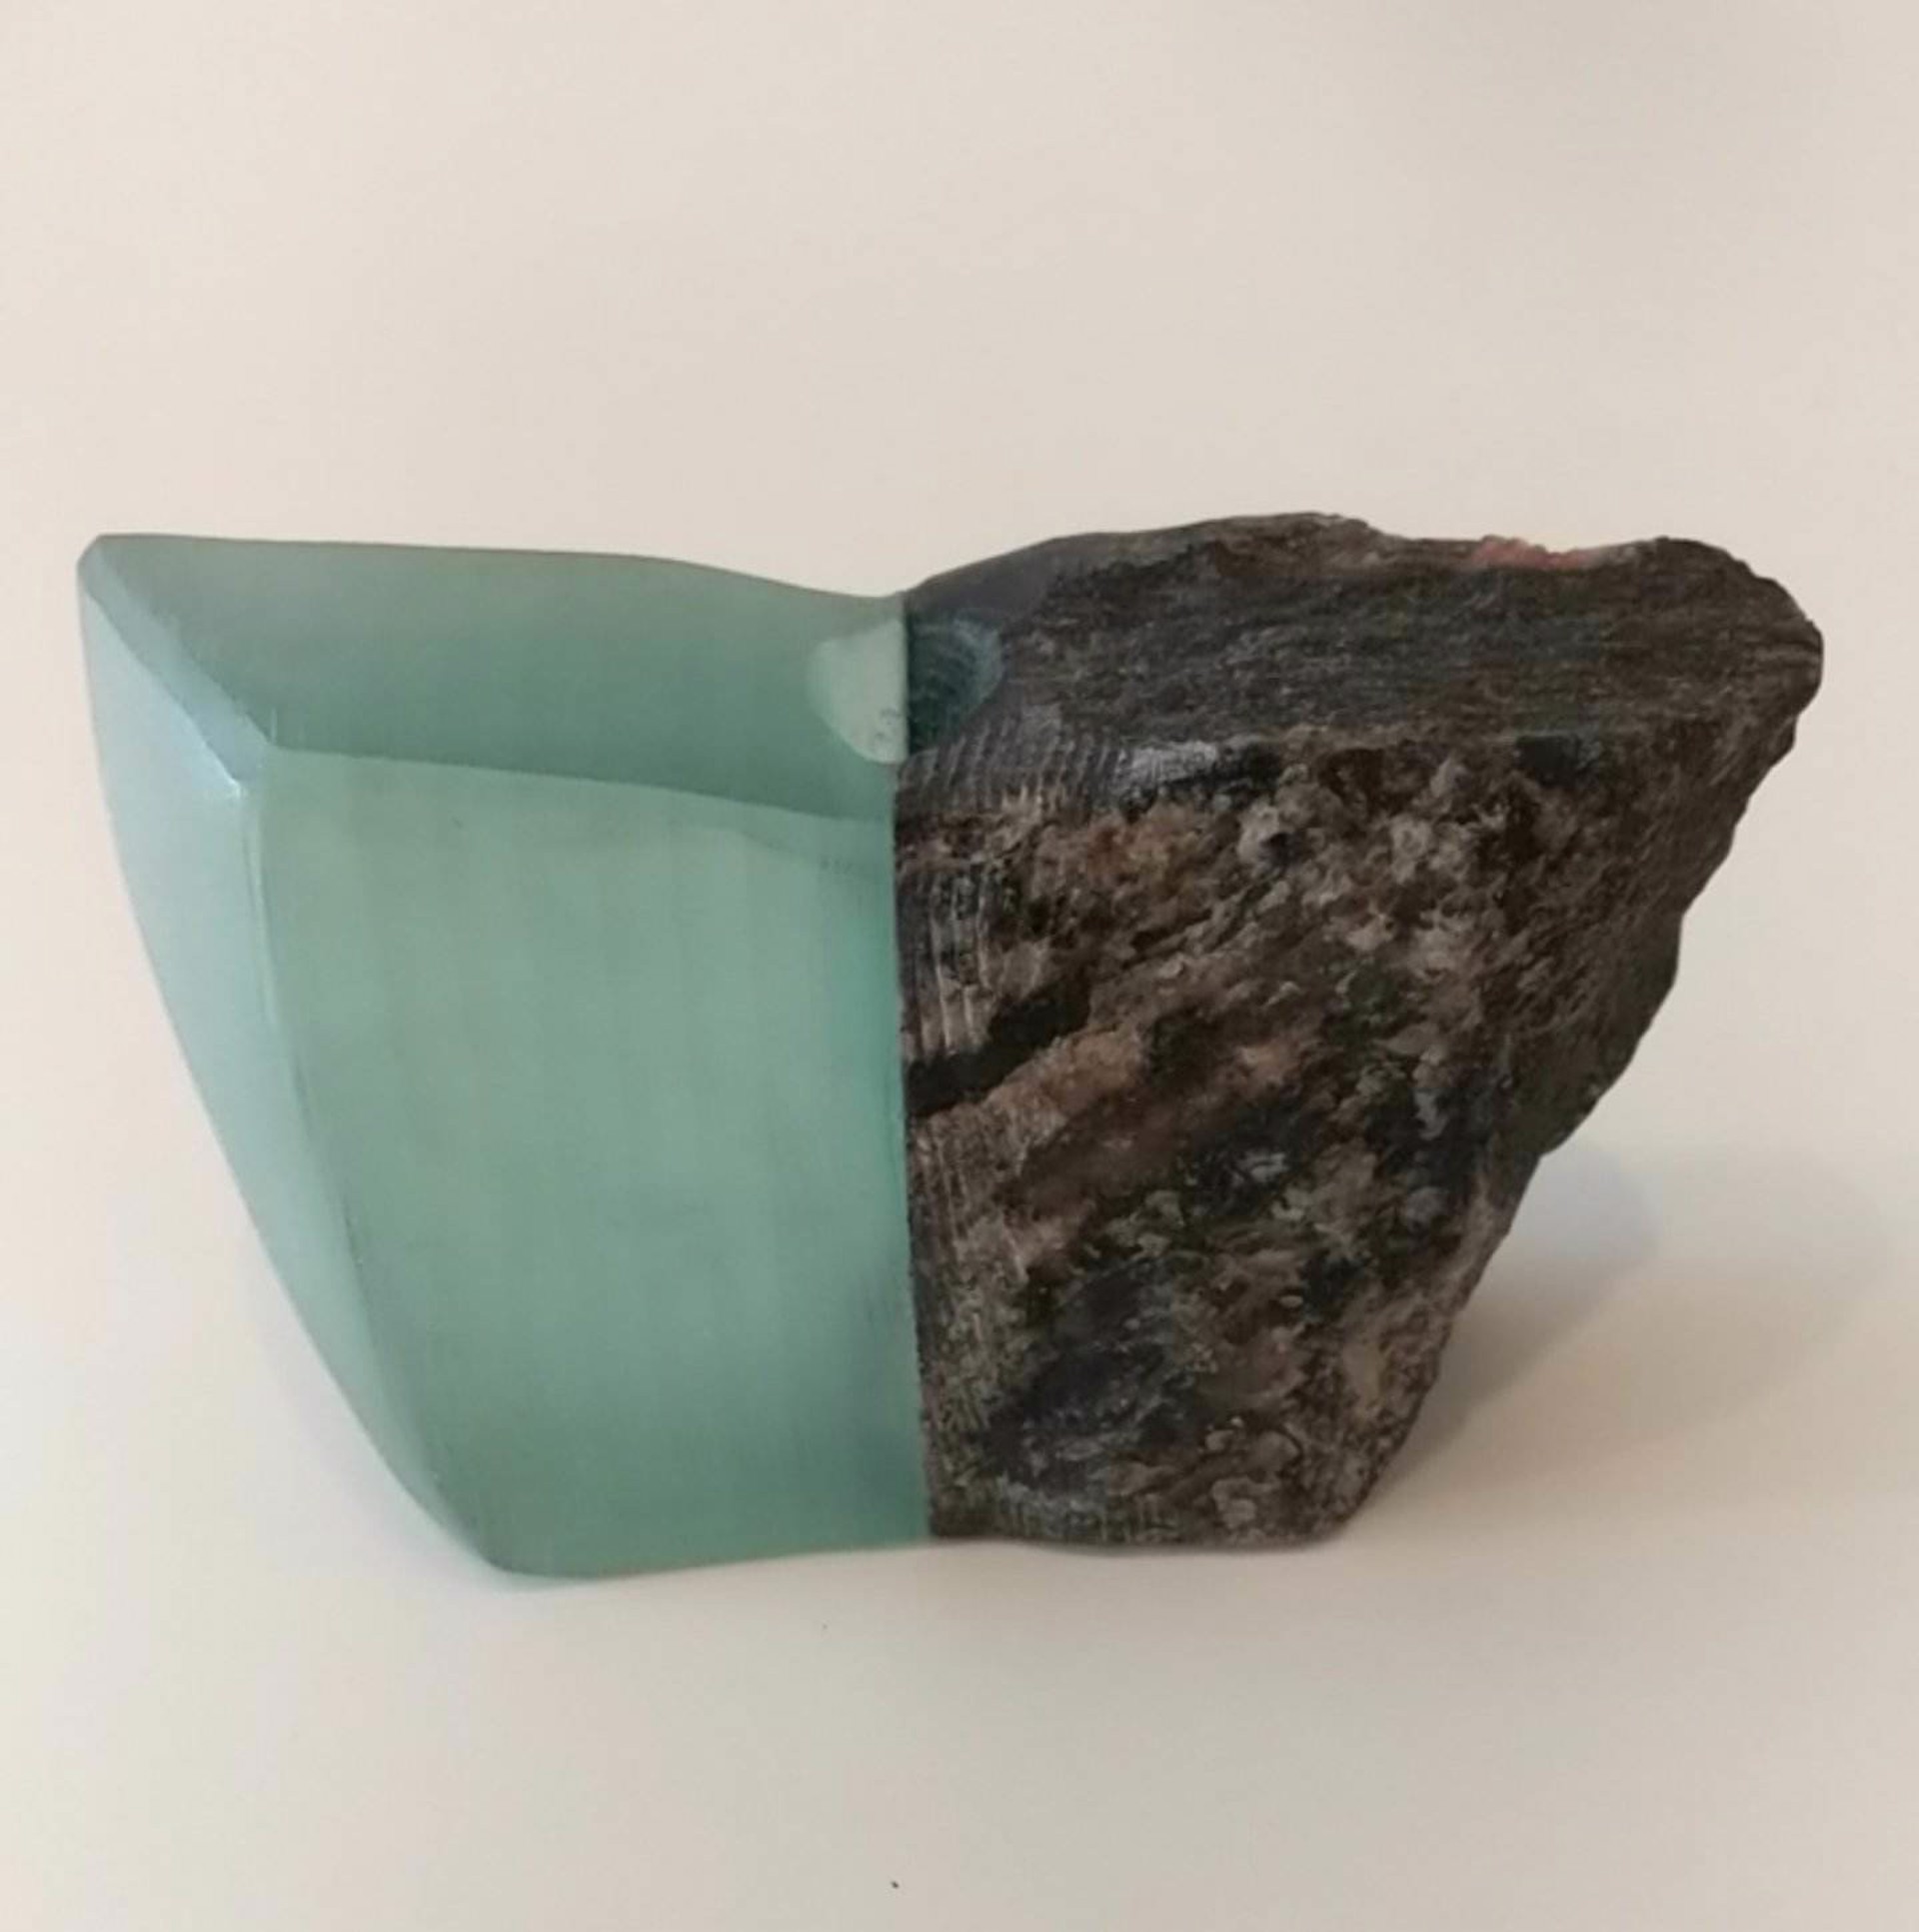 Medium Glass and Stone Vase #8 by Christy Haldane